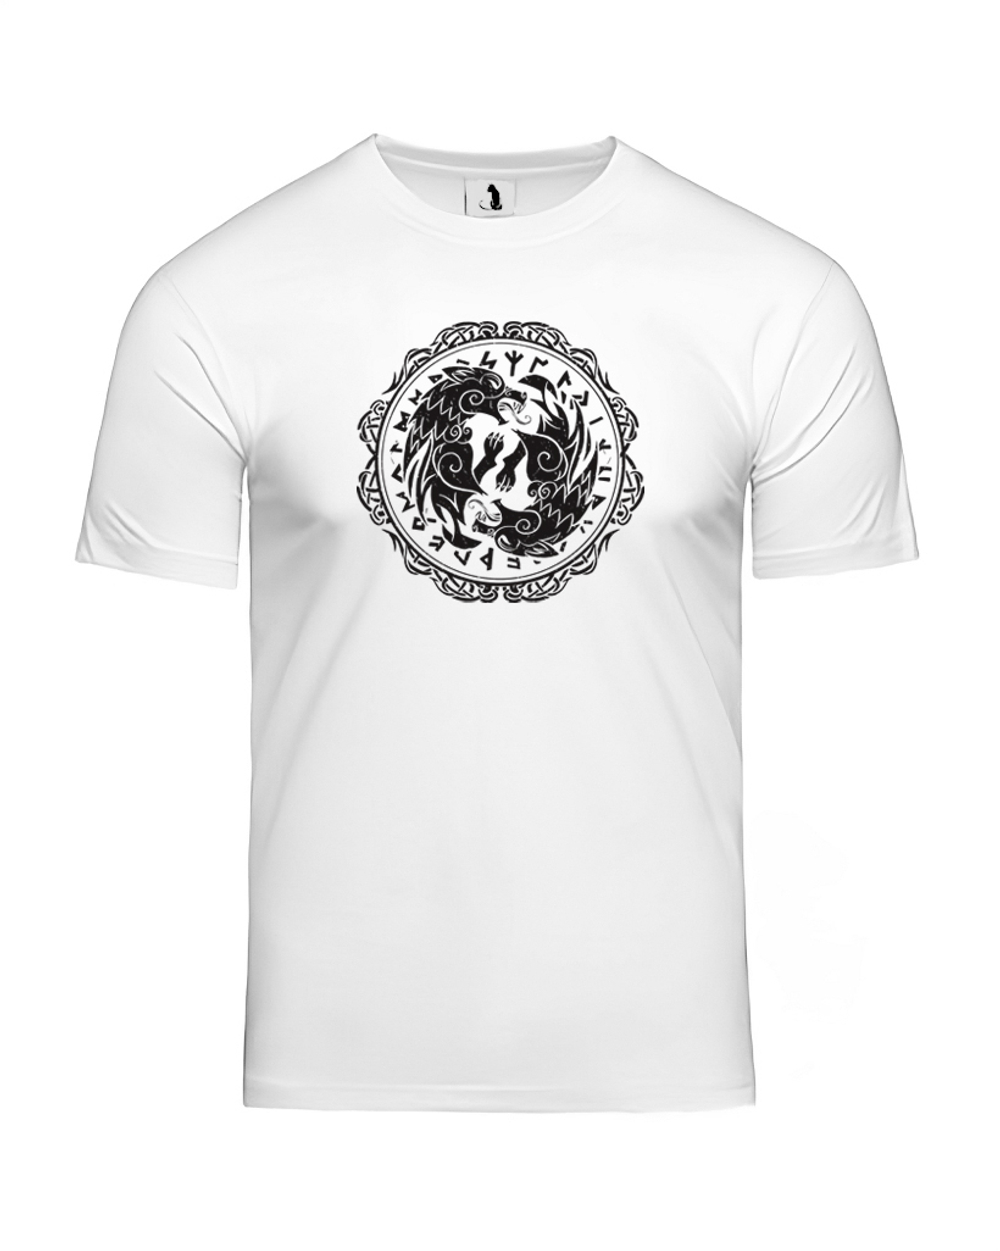 Скандинавская футболка с волком и рунами unisex белая с черным рисунком